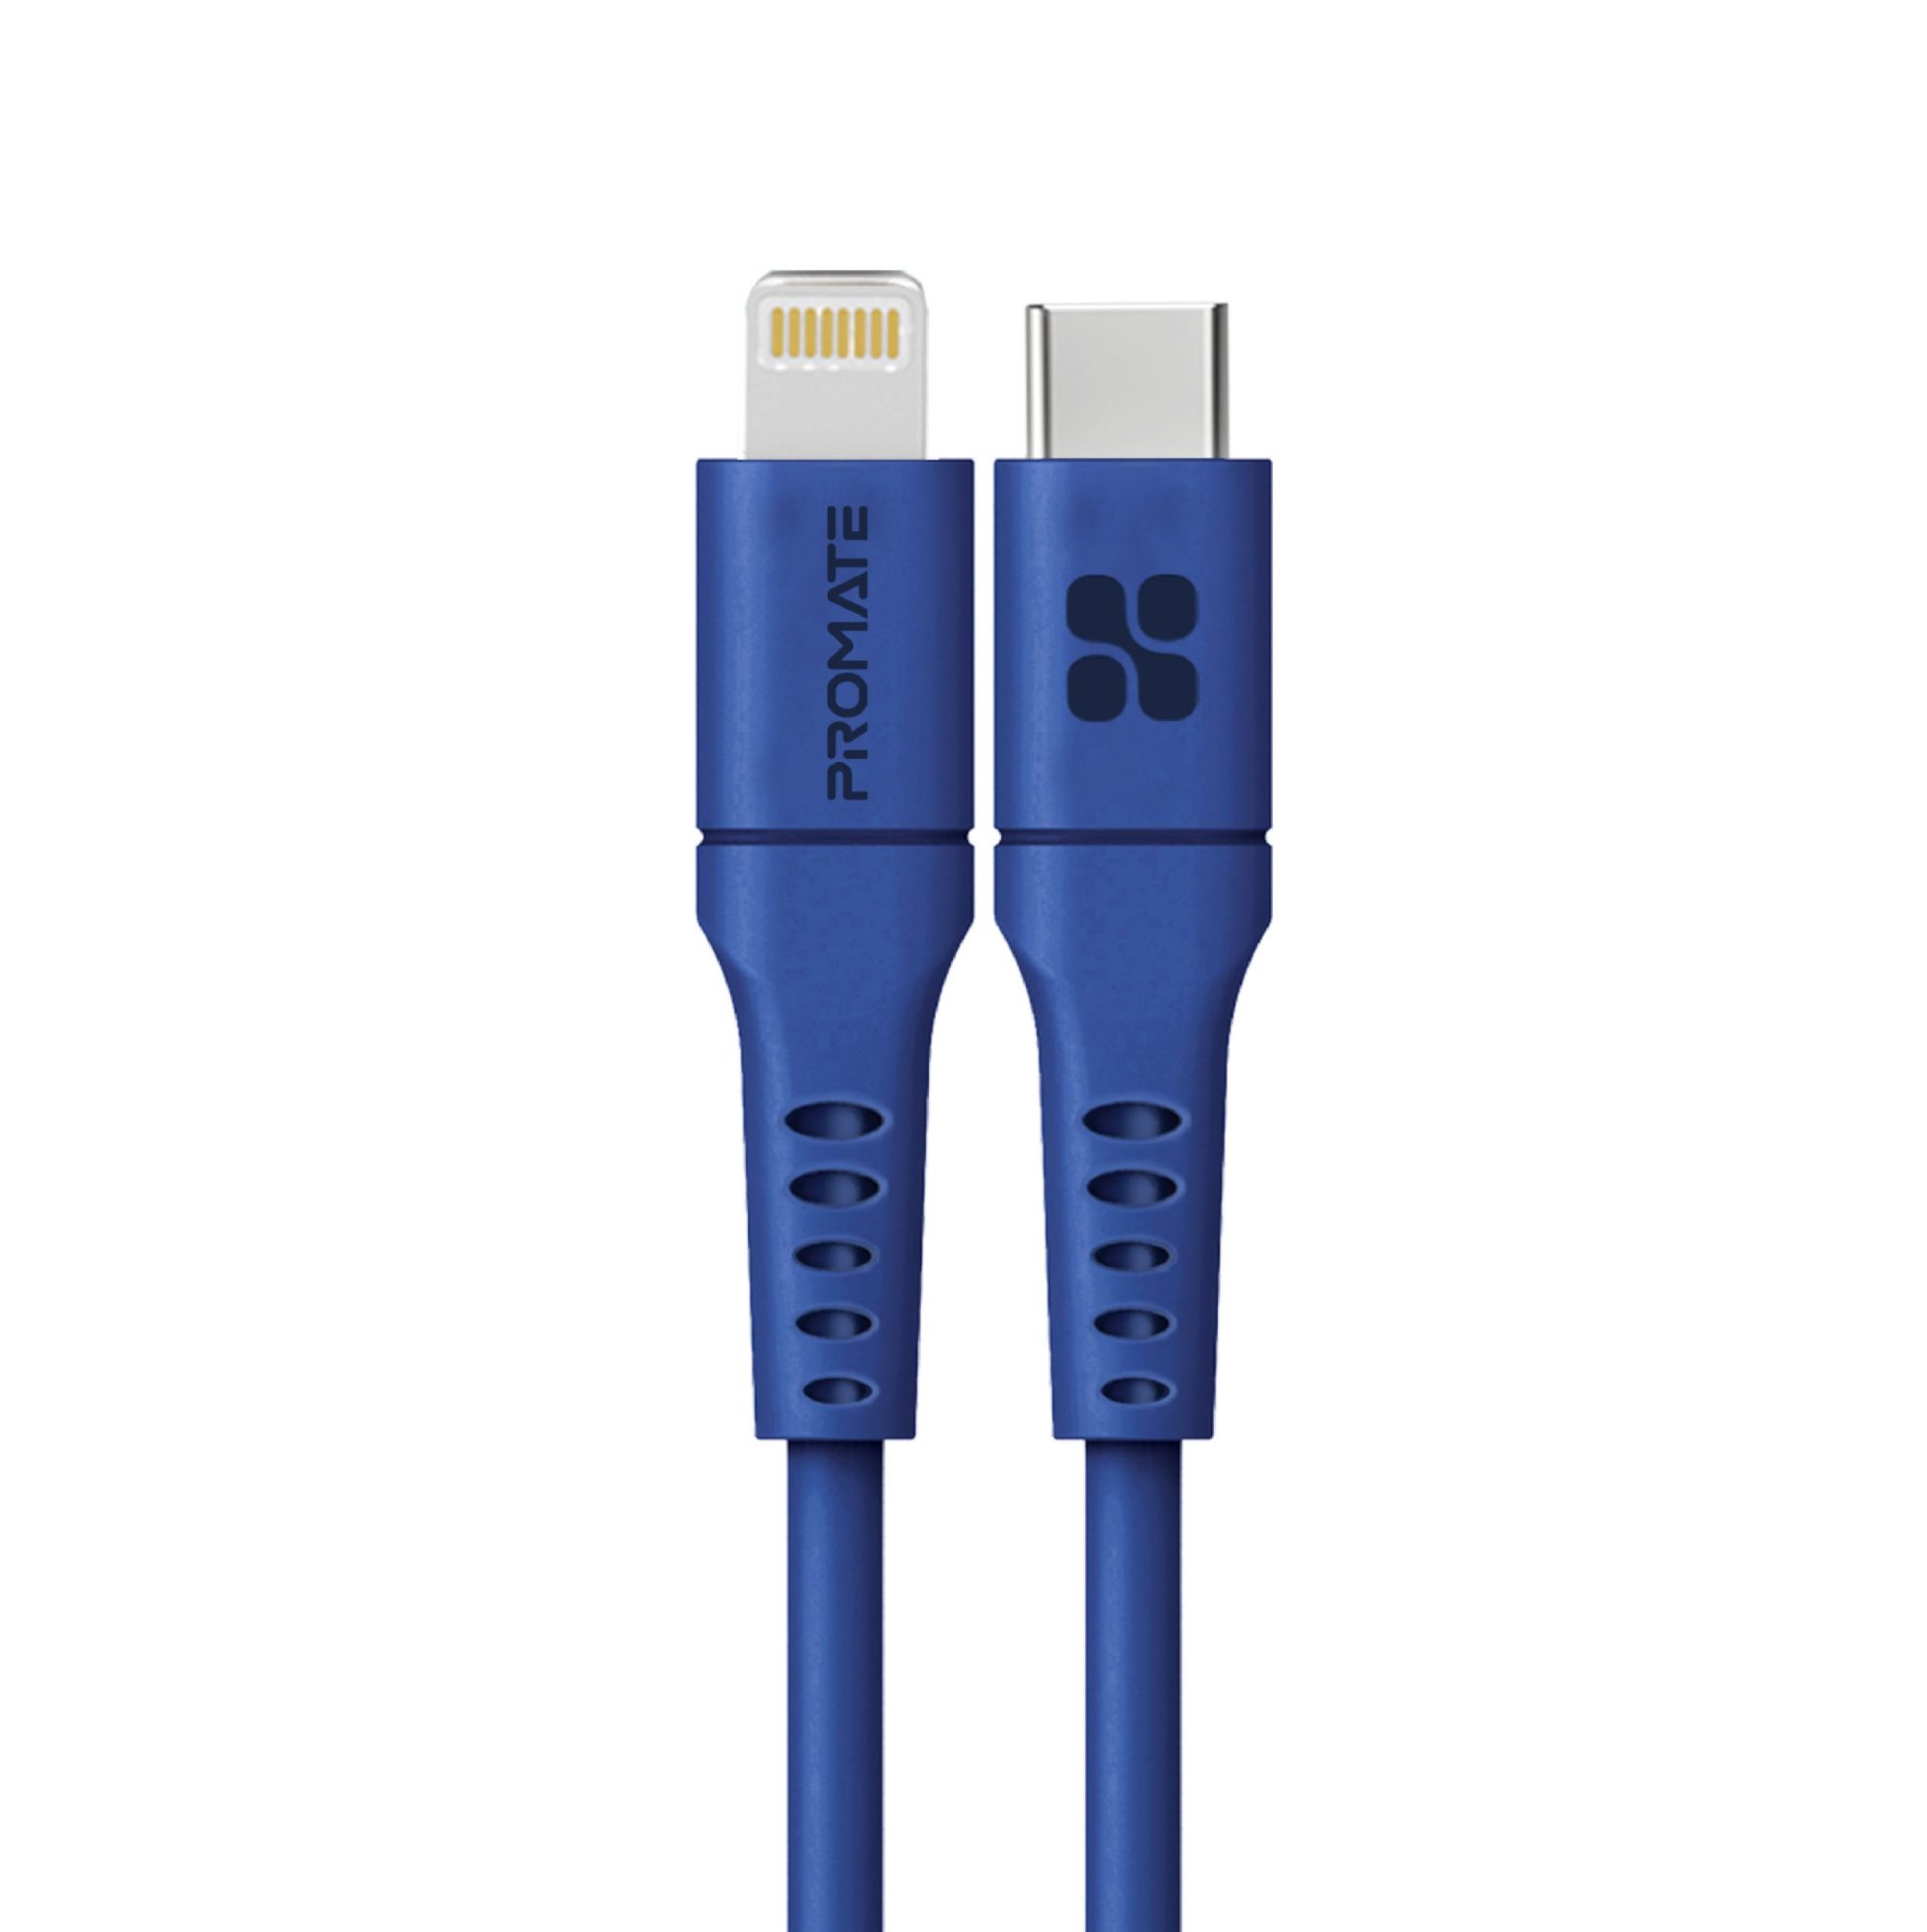 Promate USB-C to Lightning Cable 3m, Powerful 20W Power Delivery Fast Charging Silicone Lightning Cable with 480 Mbps Data Sync and 3A Power Output for iPhone 13/13 Pro/13 Pro Max, iPad Pro, PowerLink-300 Blue